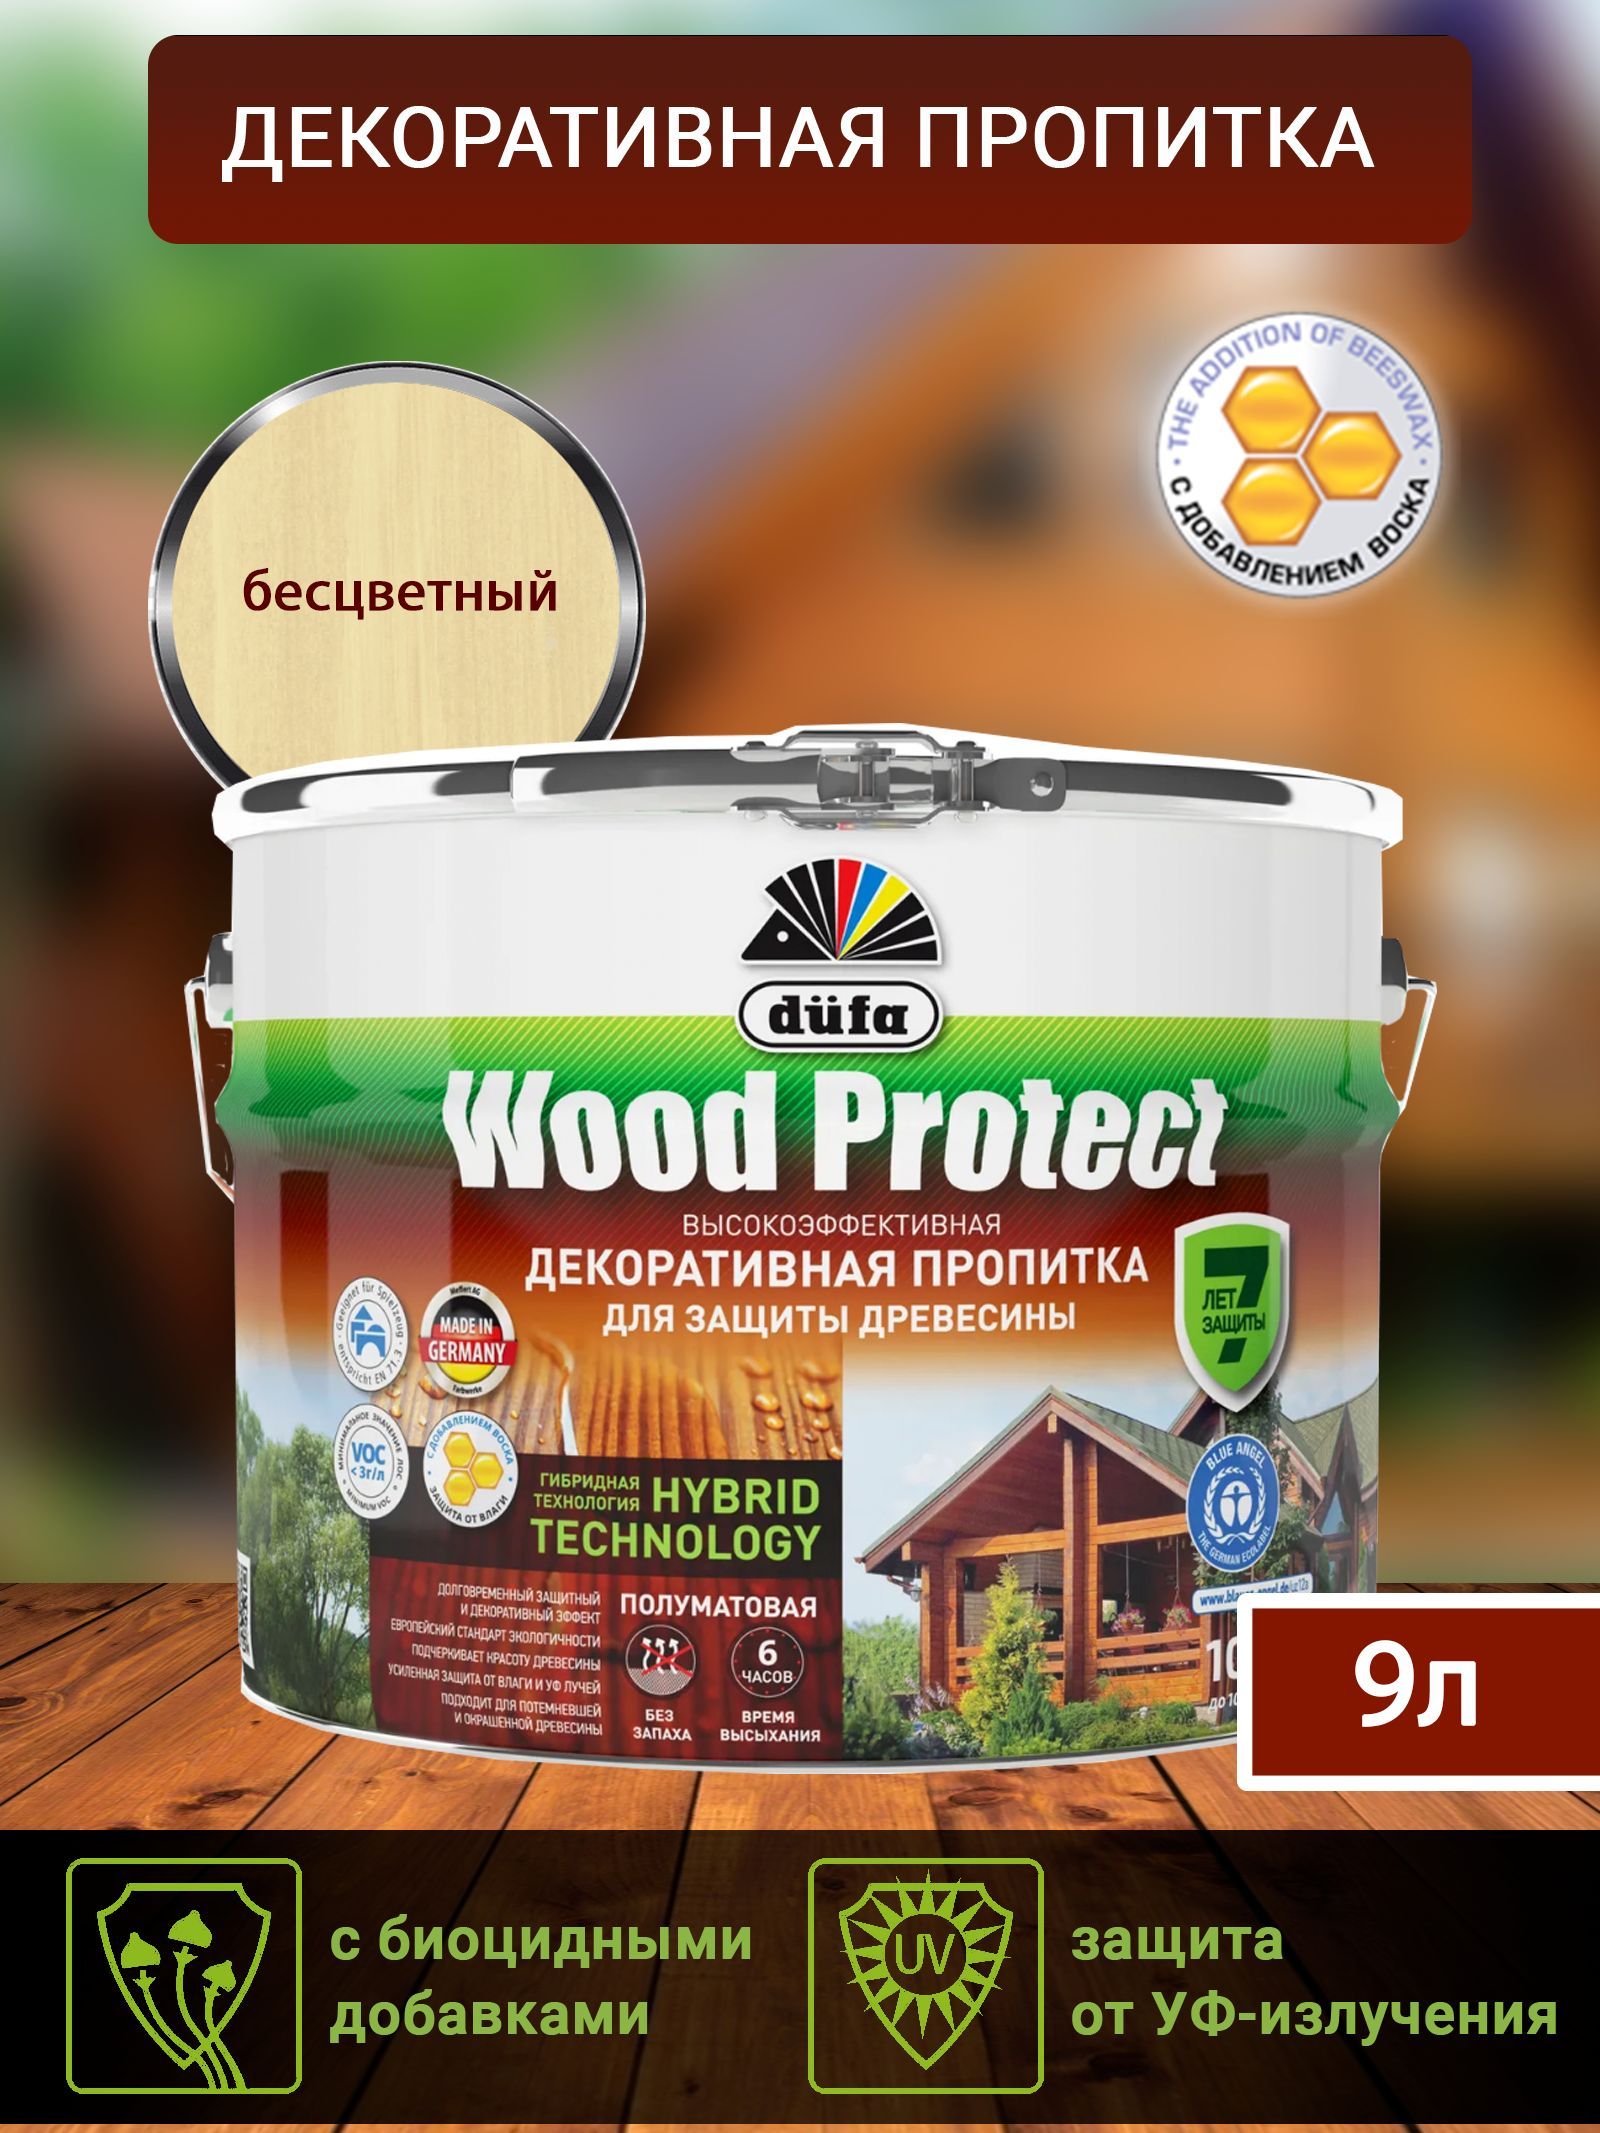 Dufa Пропитка “Wood Protect” для защиты древесины; бесцветный 9 л